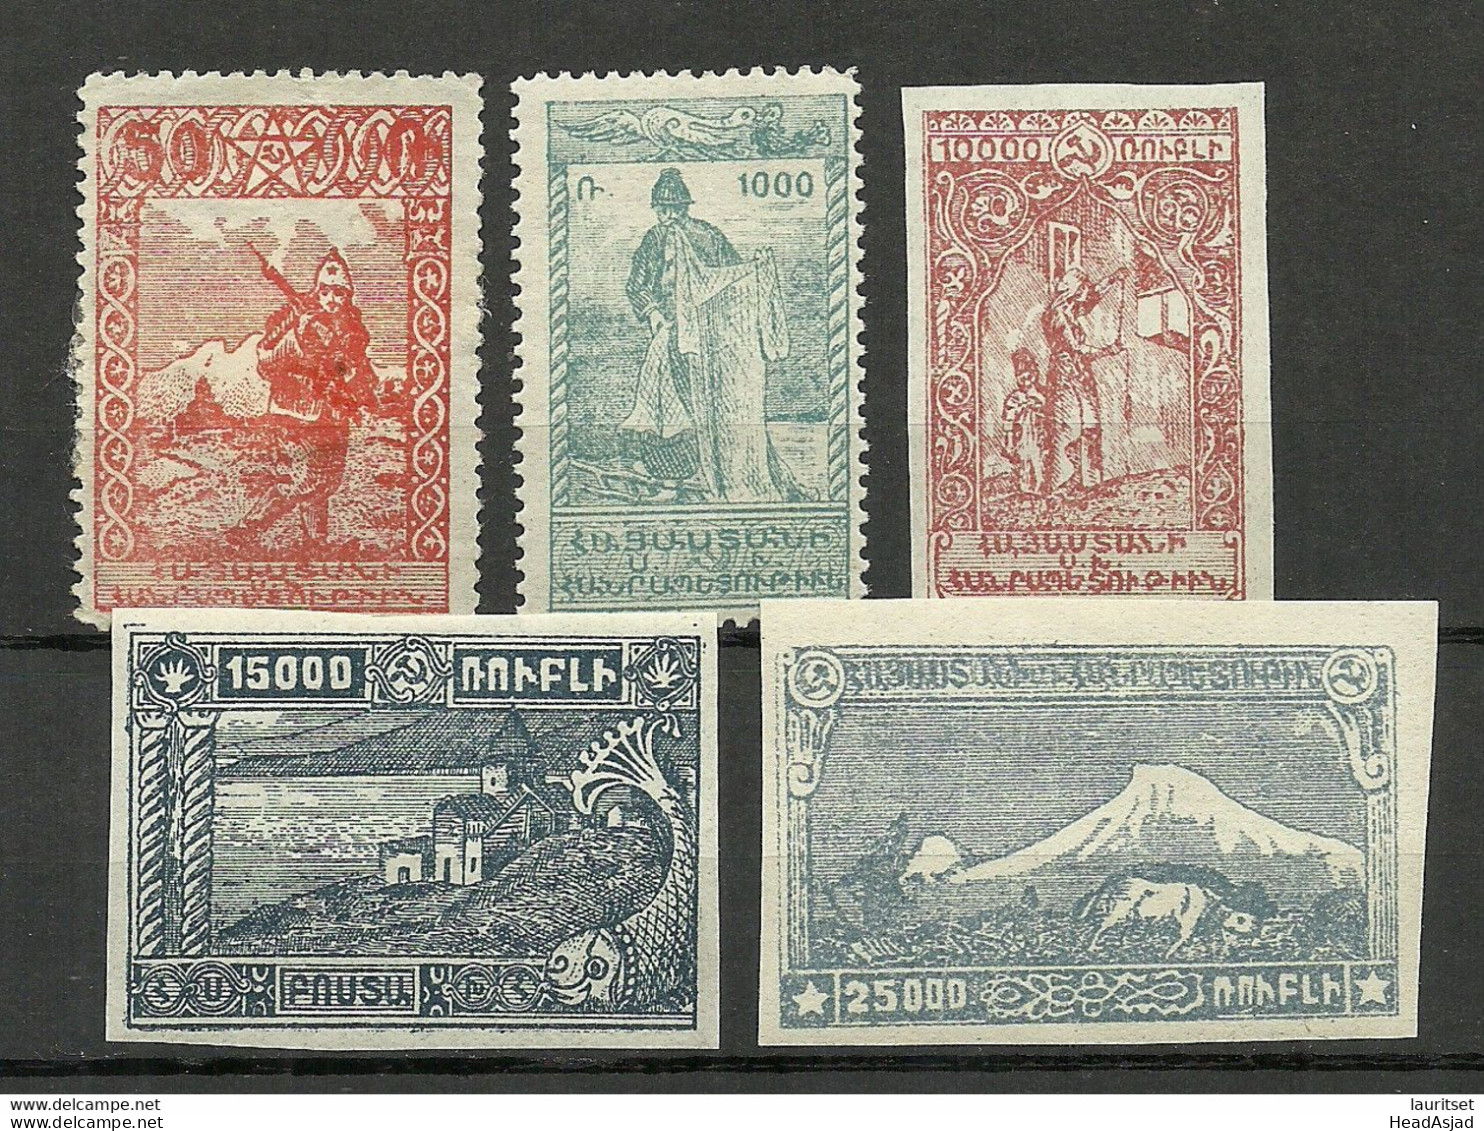 ARMENIEN Armenia 1921 = 5 Values From Set Michel II A - II S * - Armenia